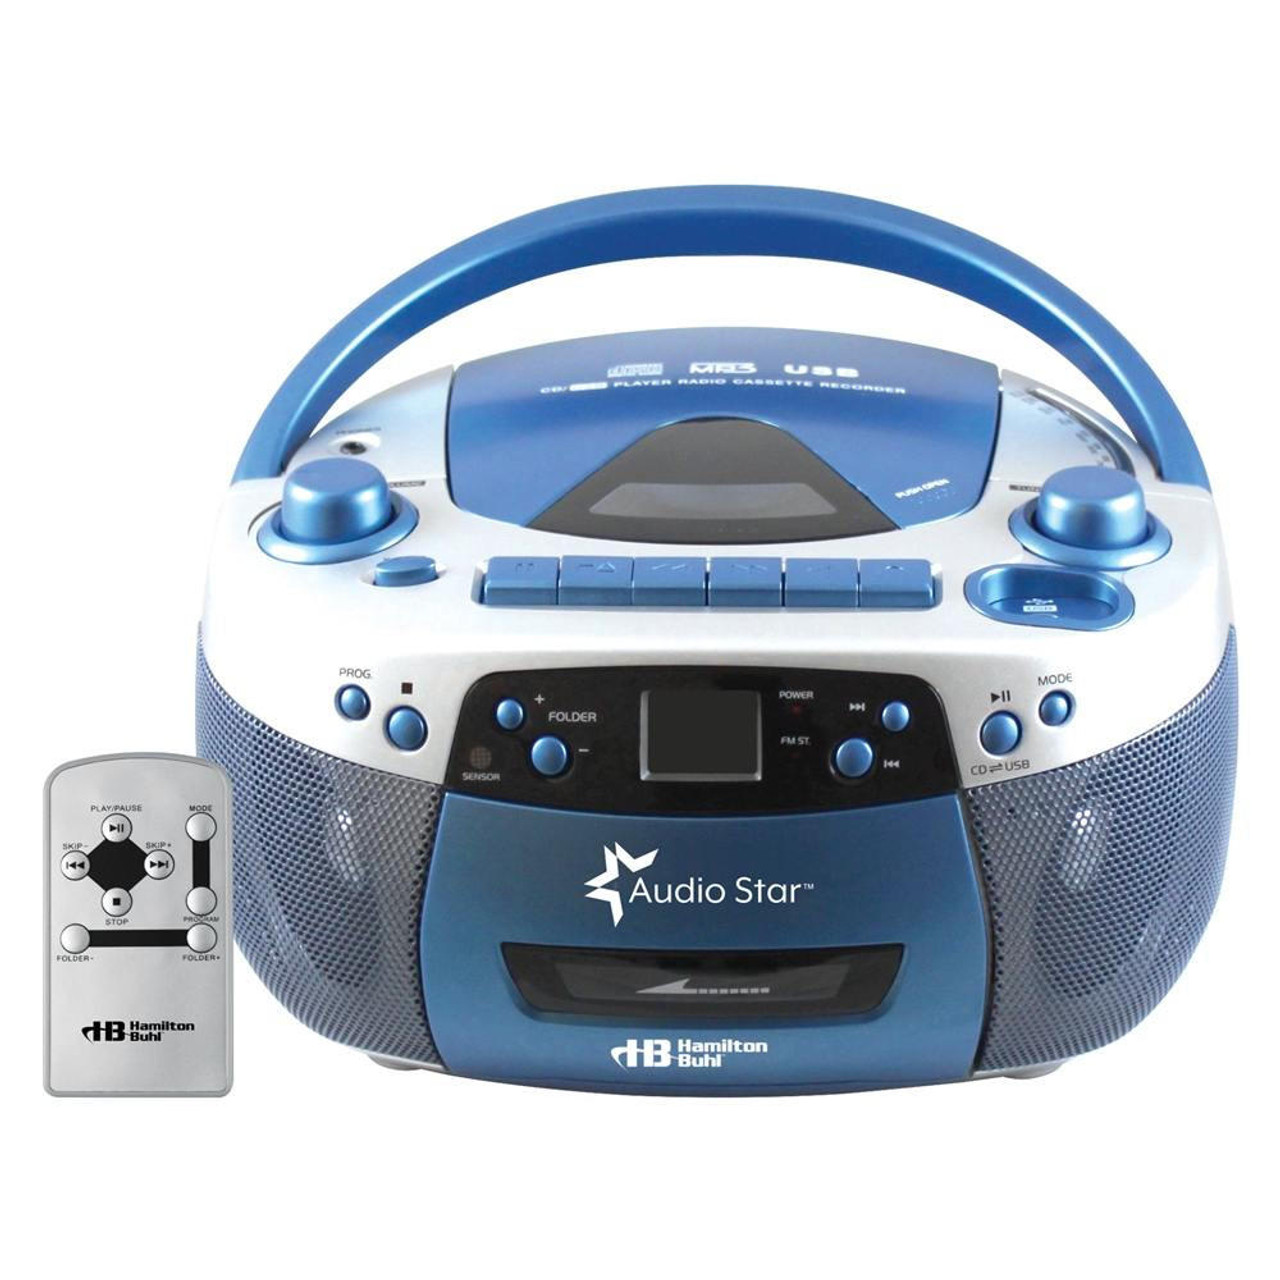 Cassette Player BT Transfer MP3/CD Audio USB Cassette Tape Player 